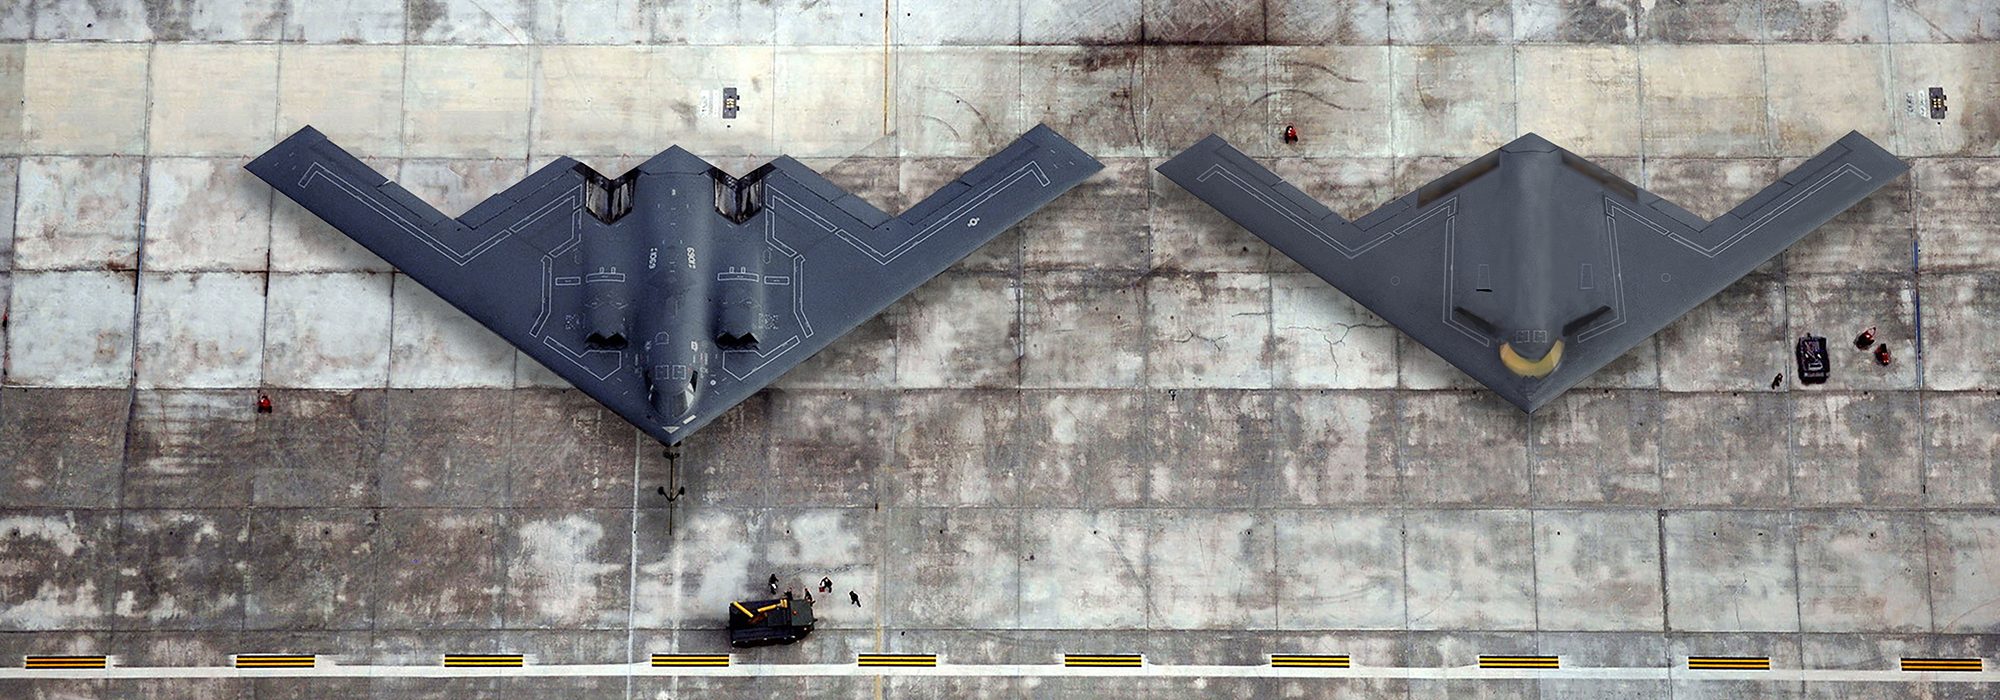 Οι νέες φωτογραφίες του stealth βομβαρδιστικού B-21 Raider της USAF – Πτήση εντός του έτους